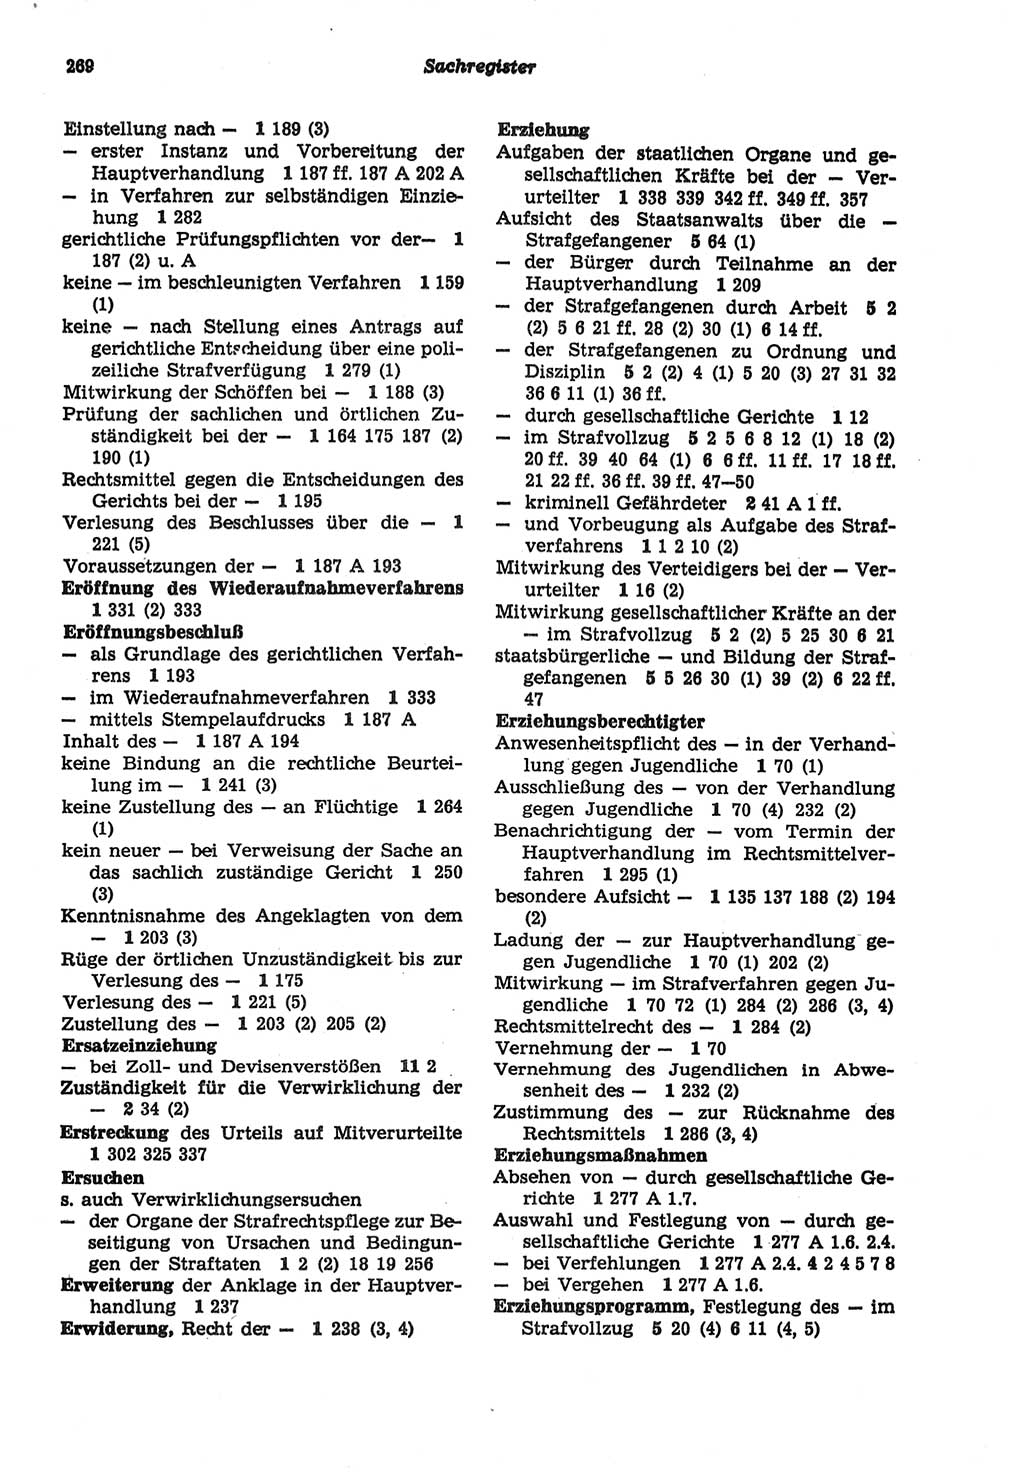 Strafprozeßordnung (StPO) der Deutschen Demokratischen Republik (DDR) sowie angrenzende Gesetze und Bestimmungen 1977, Seite 269 (StPO DDR Ges. Best. 1977, S. 269)